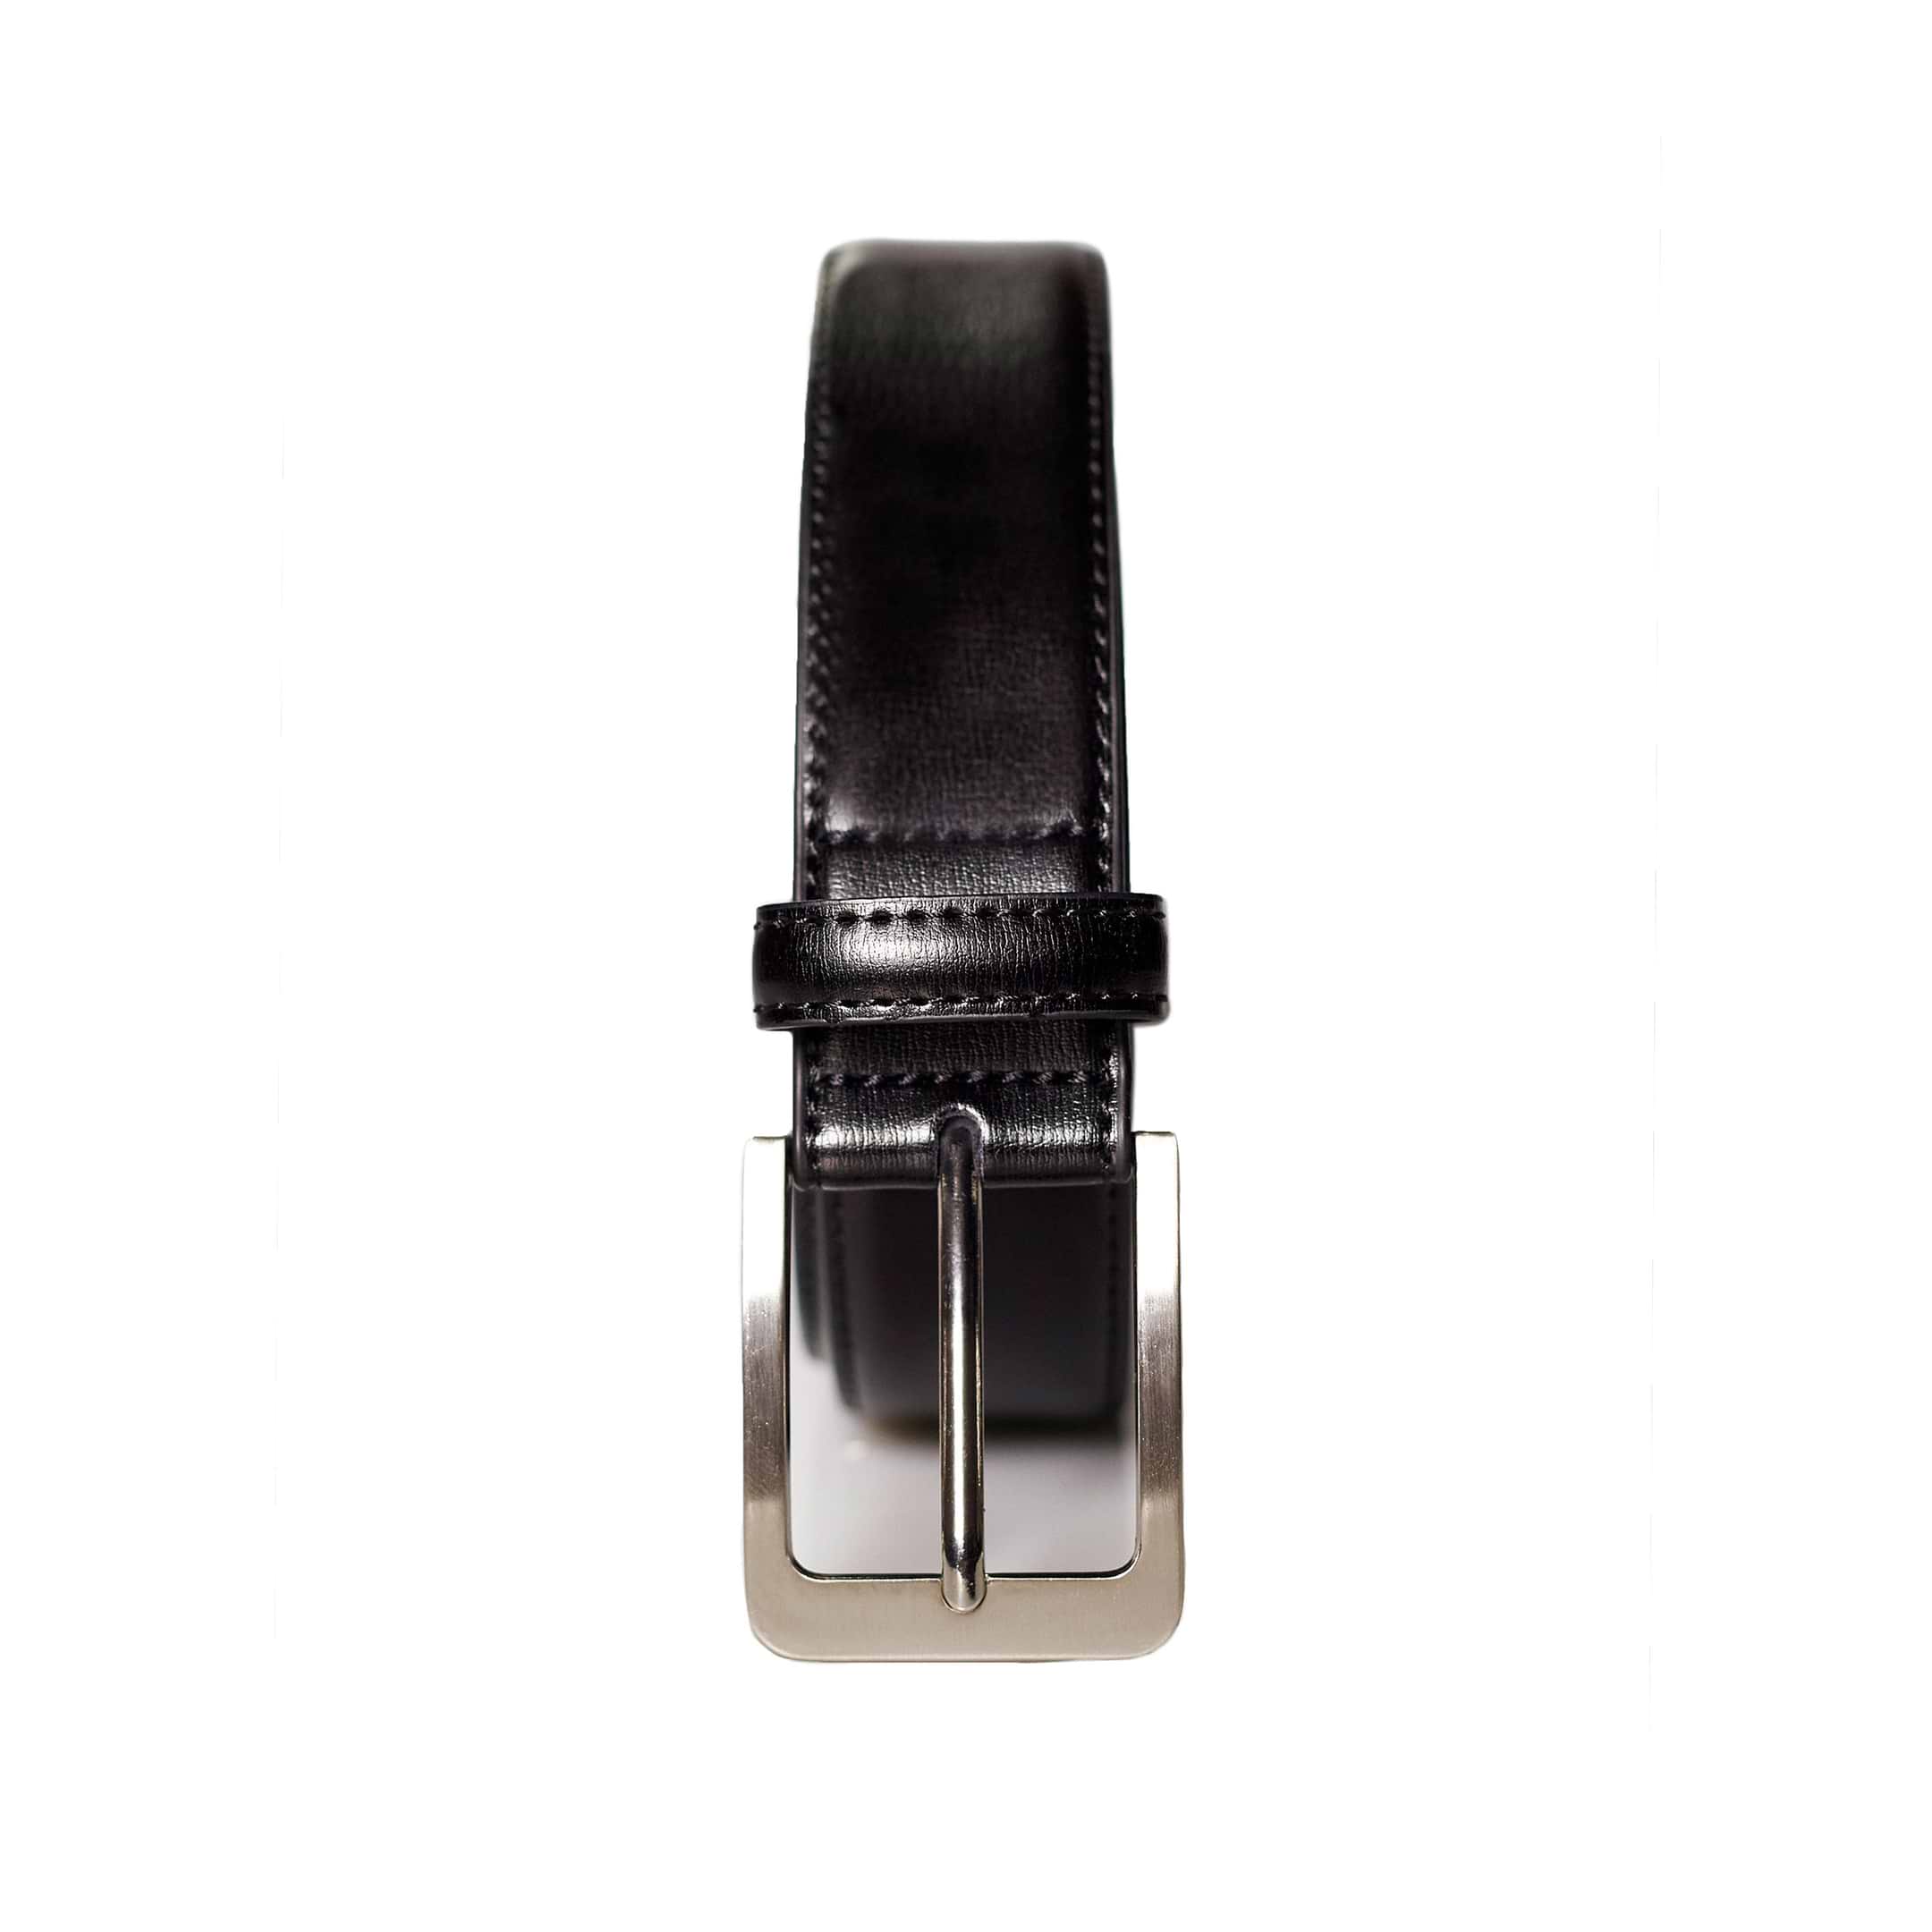 Solid Leather Belt - Black